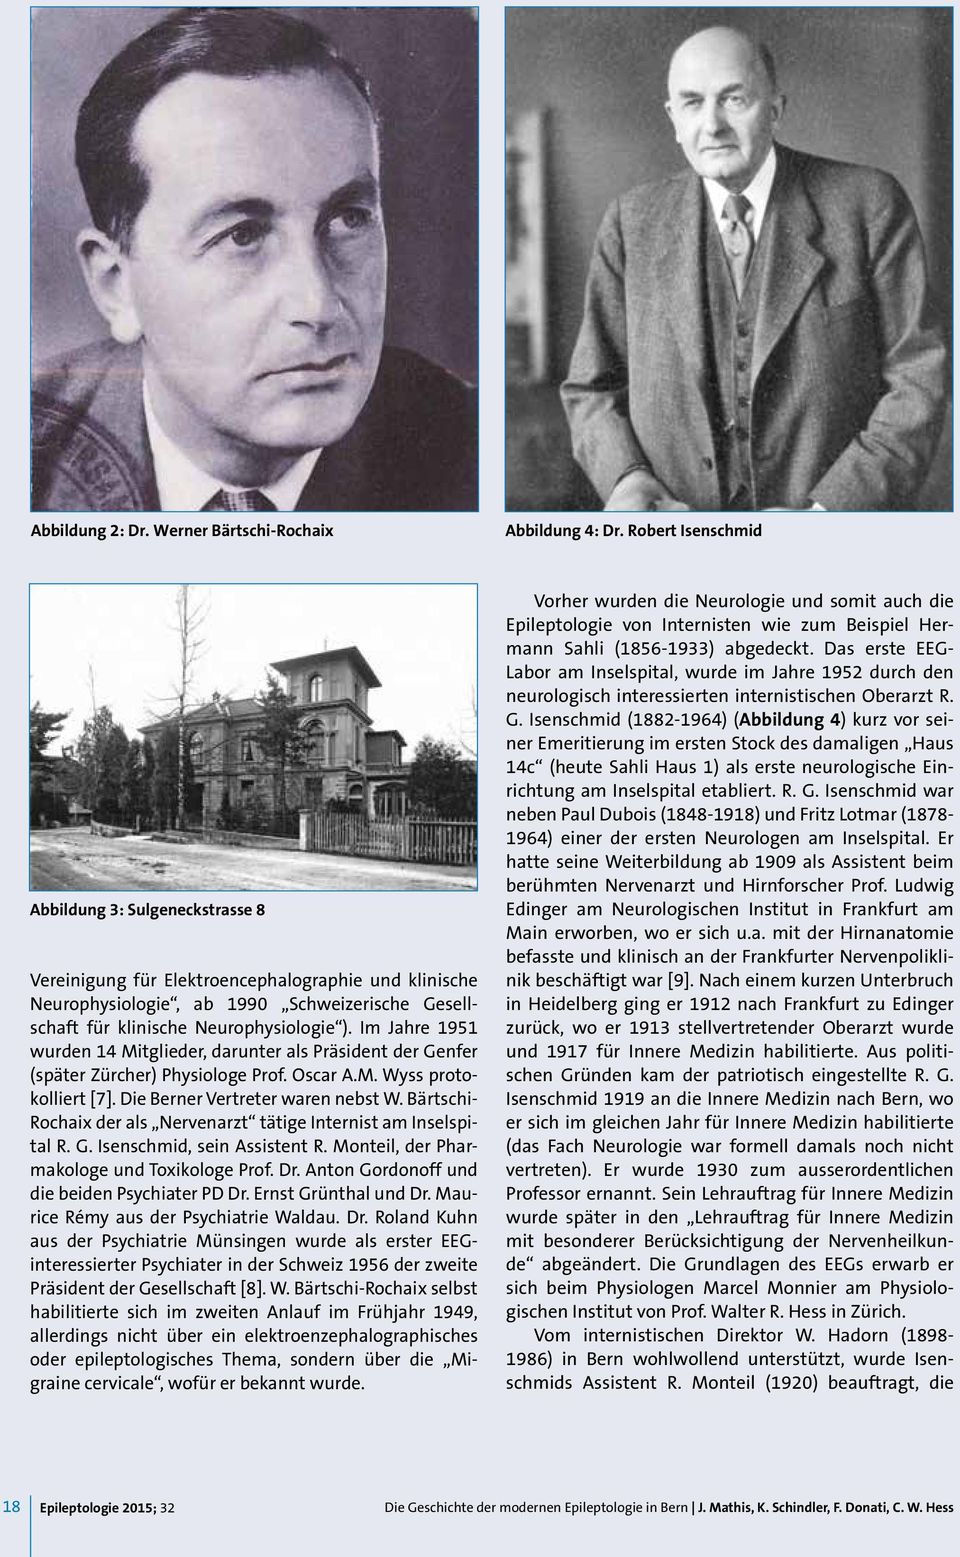 Im Jahre 1951 wurden 14 Mitglieder, darunter als Präsident der Genfer (später Zürcher) Physiologe Prof. Oscar A.M. Wyss protokolliert [7]. Die Berner Vertreter waren nebst W.